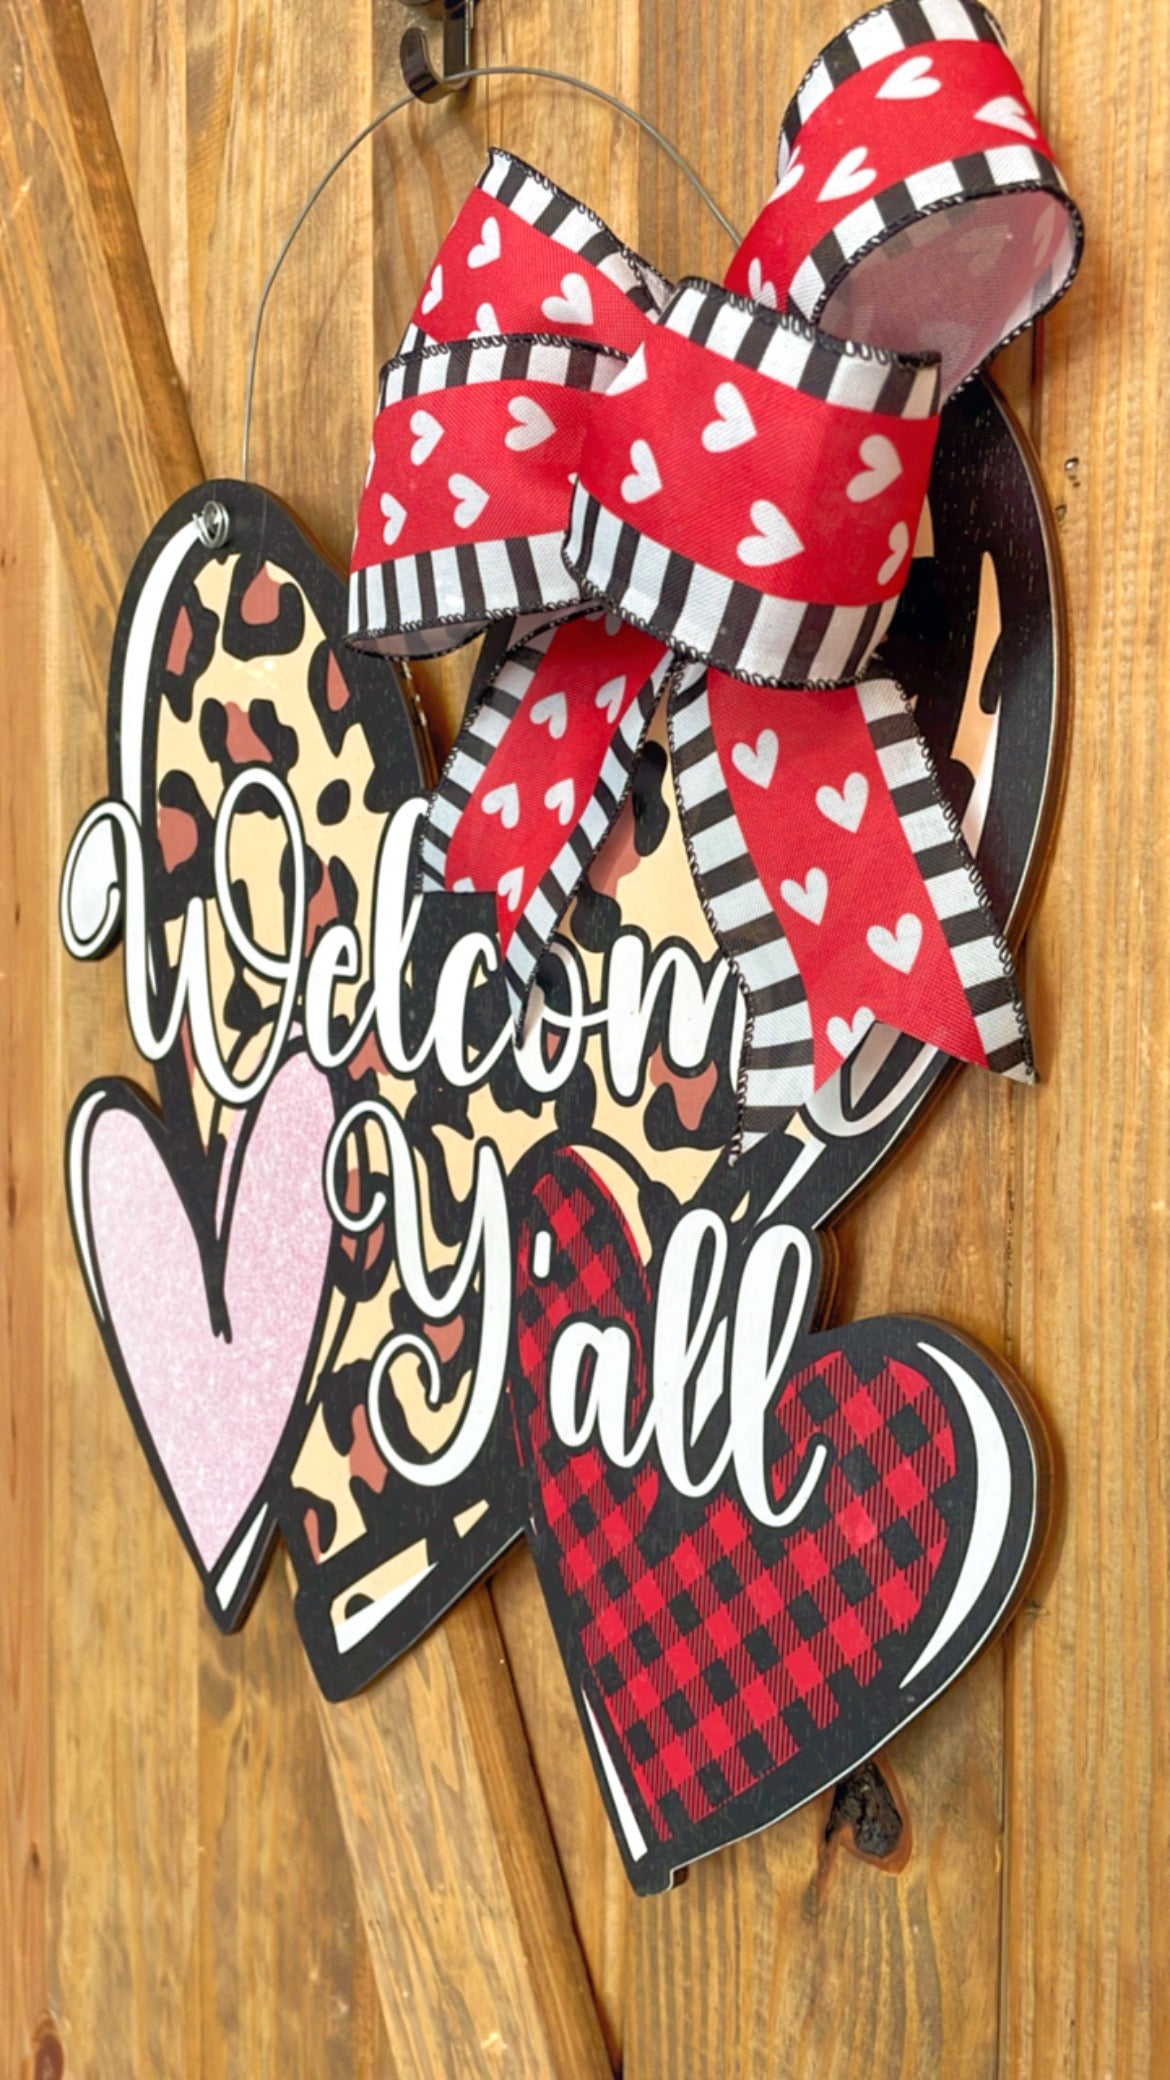 Welcome Y'all Valentines Day Door Hanger